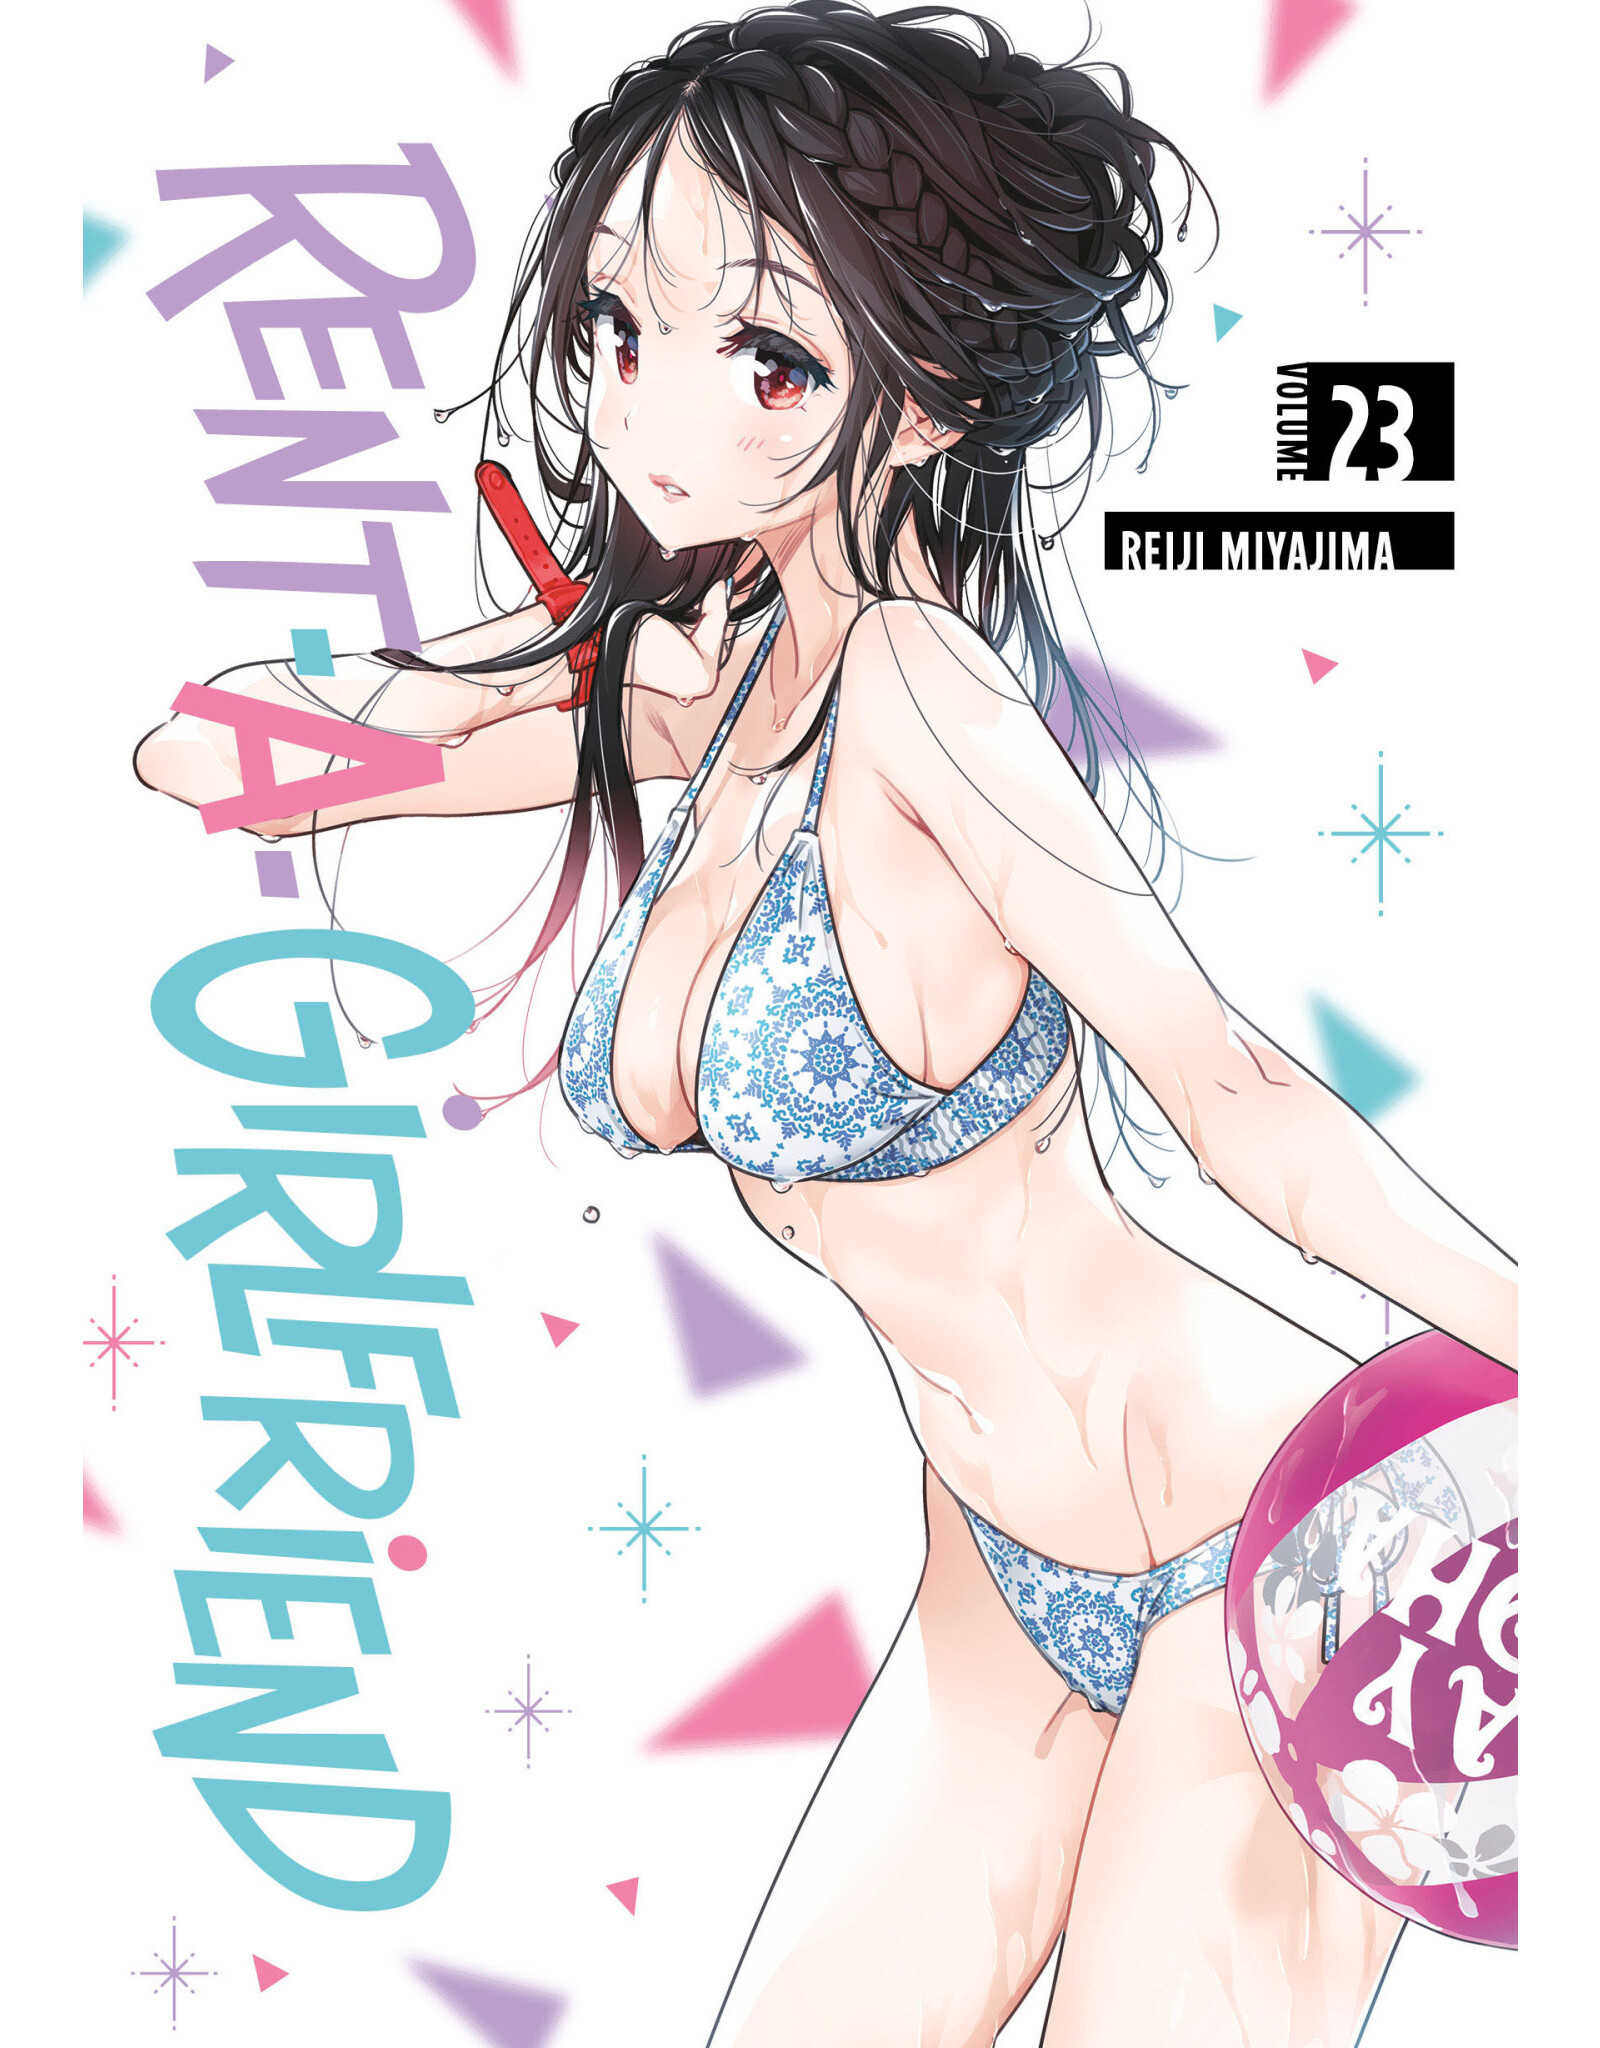 Rent-A-Girlfriend 23 (English) - Manga